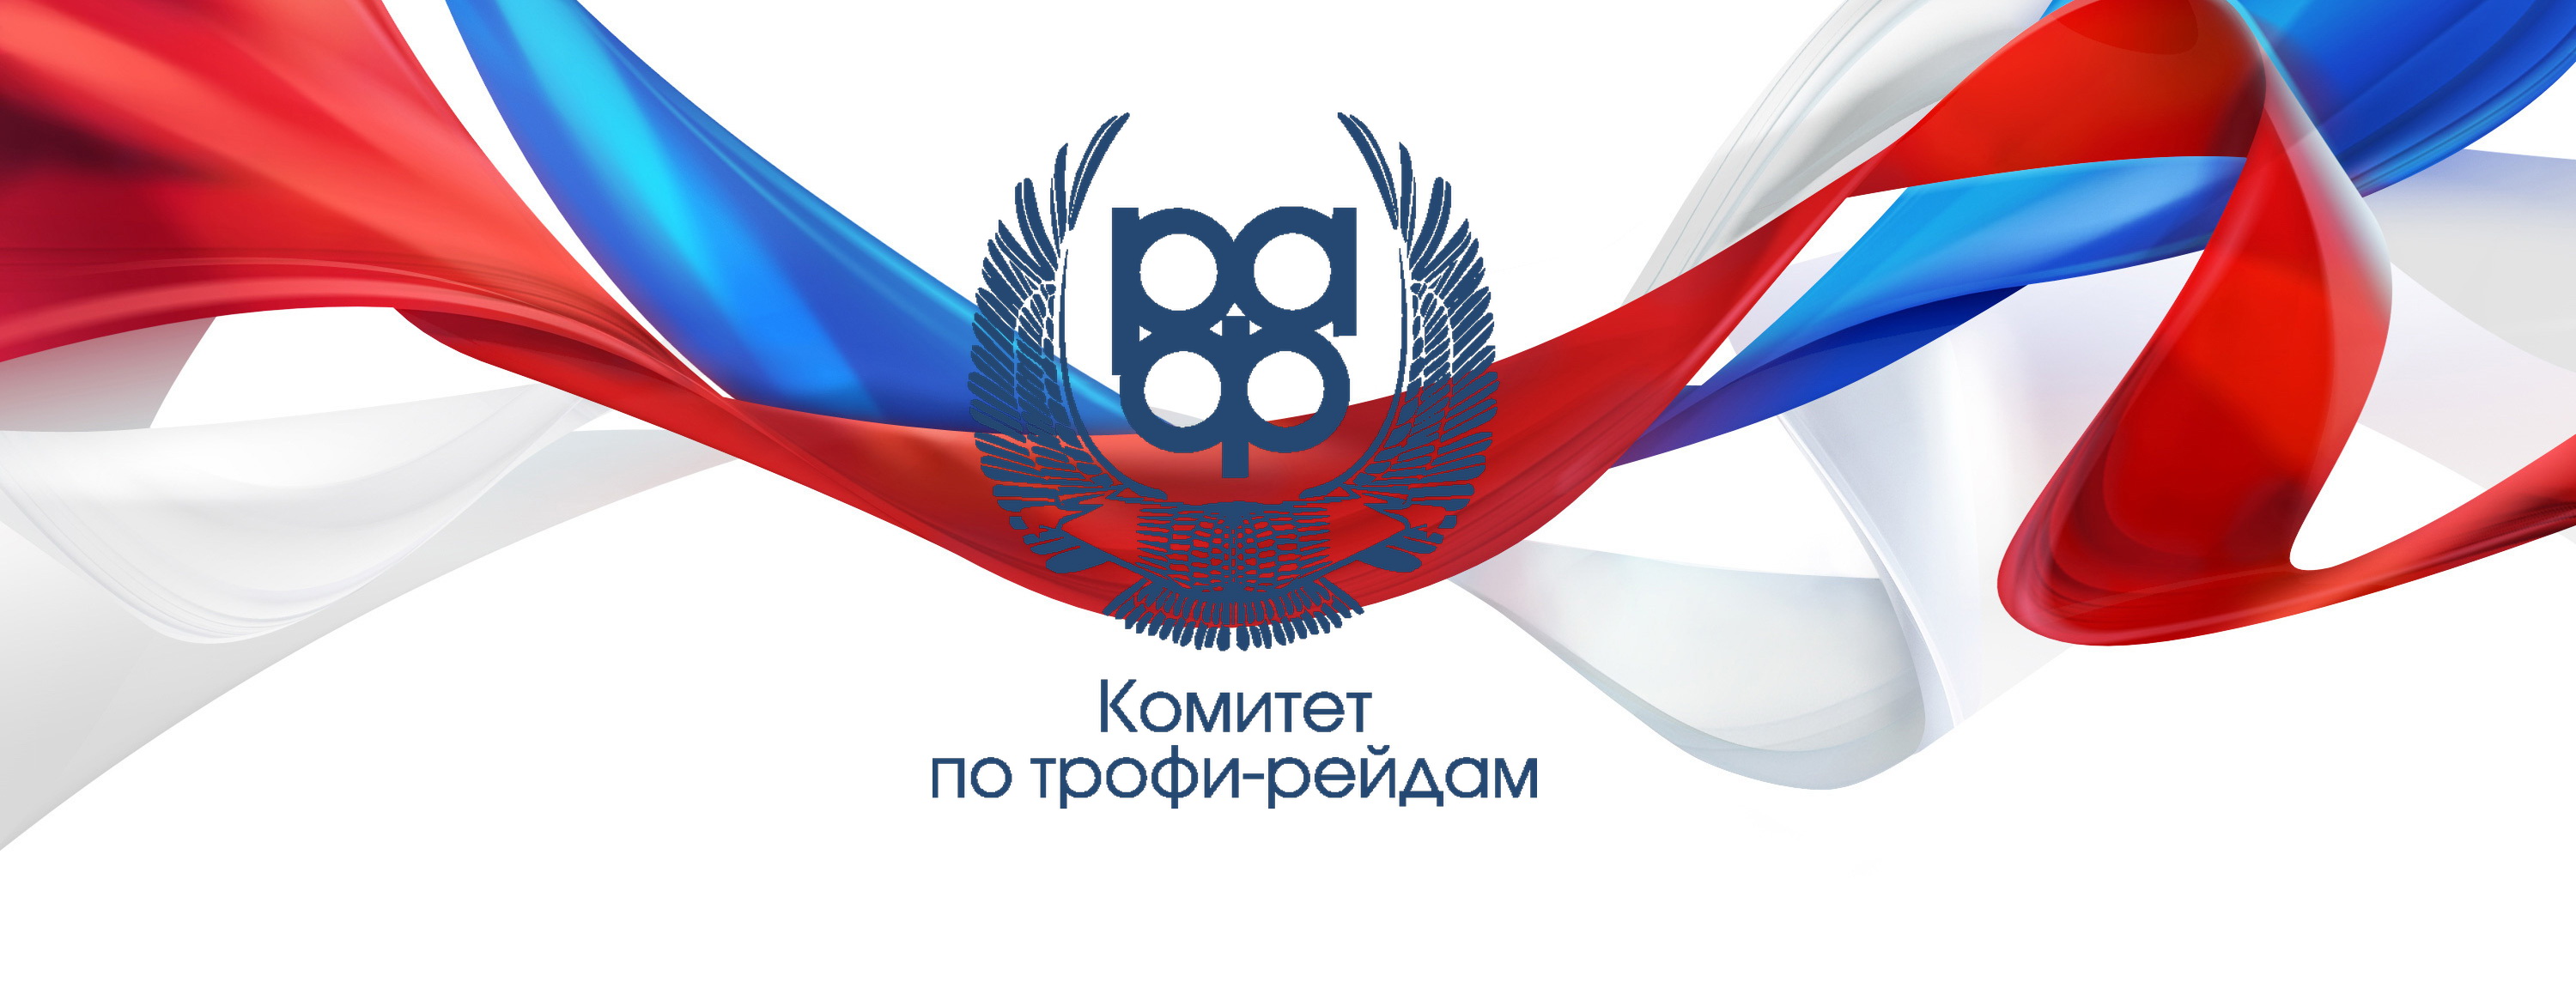 Регистрация участников 1 этапа Чемпионата России по трофи-рейдам 2018